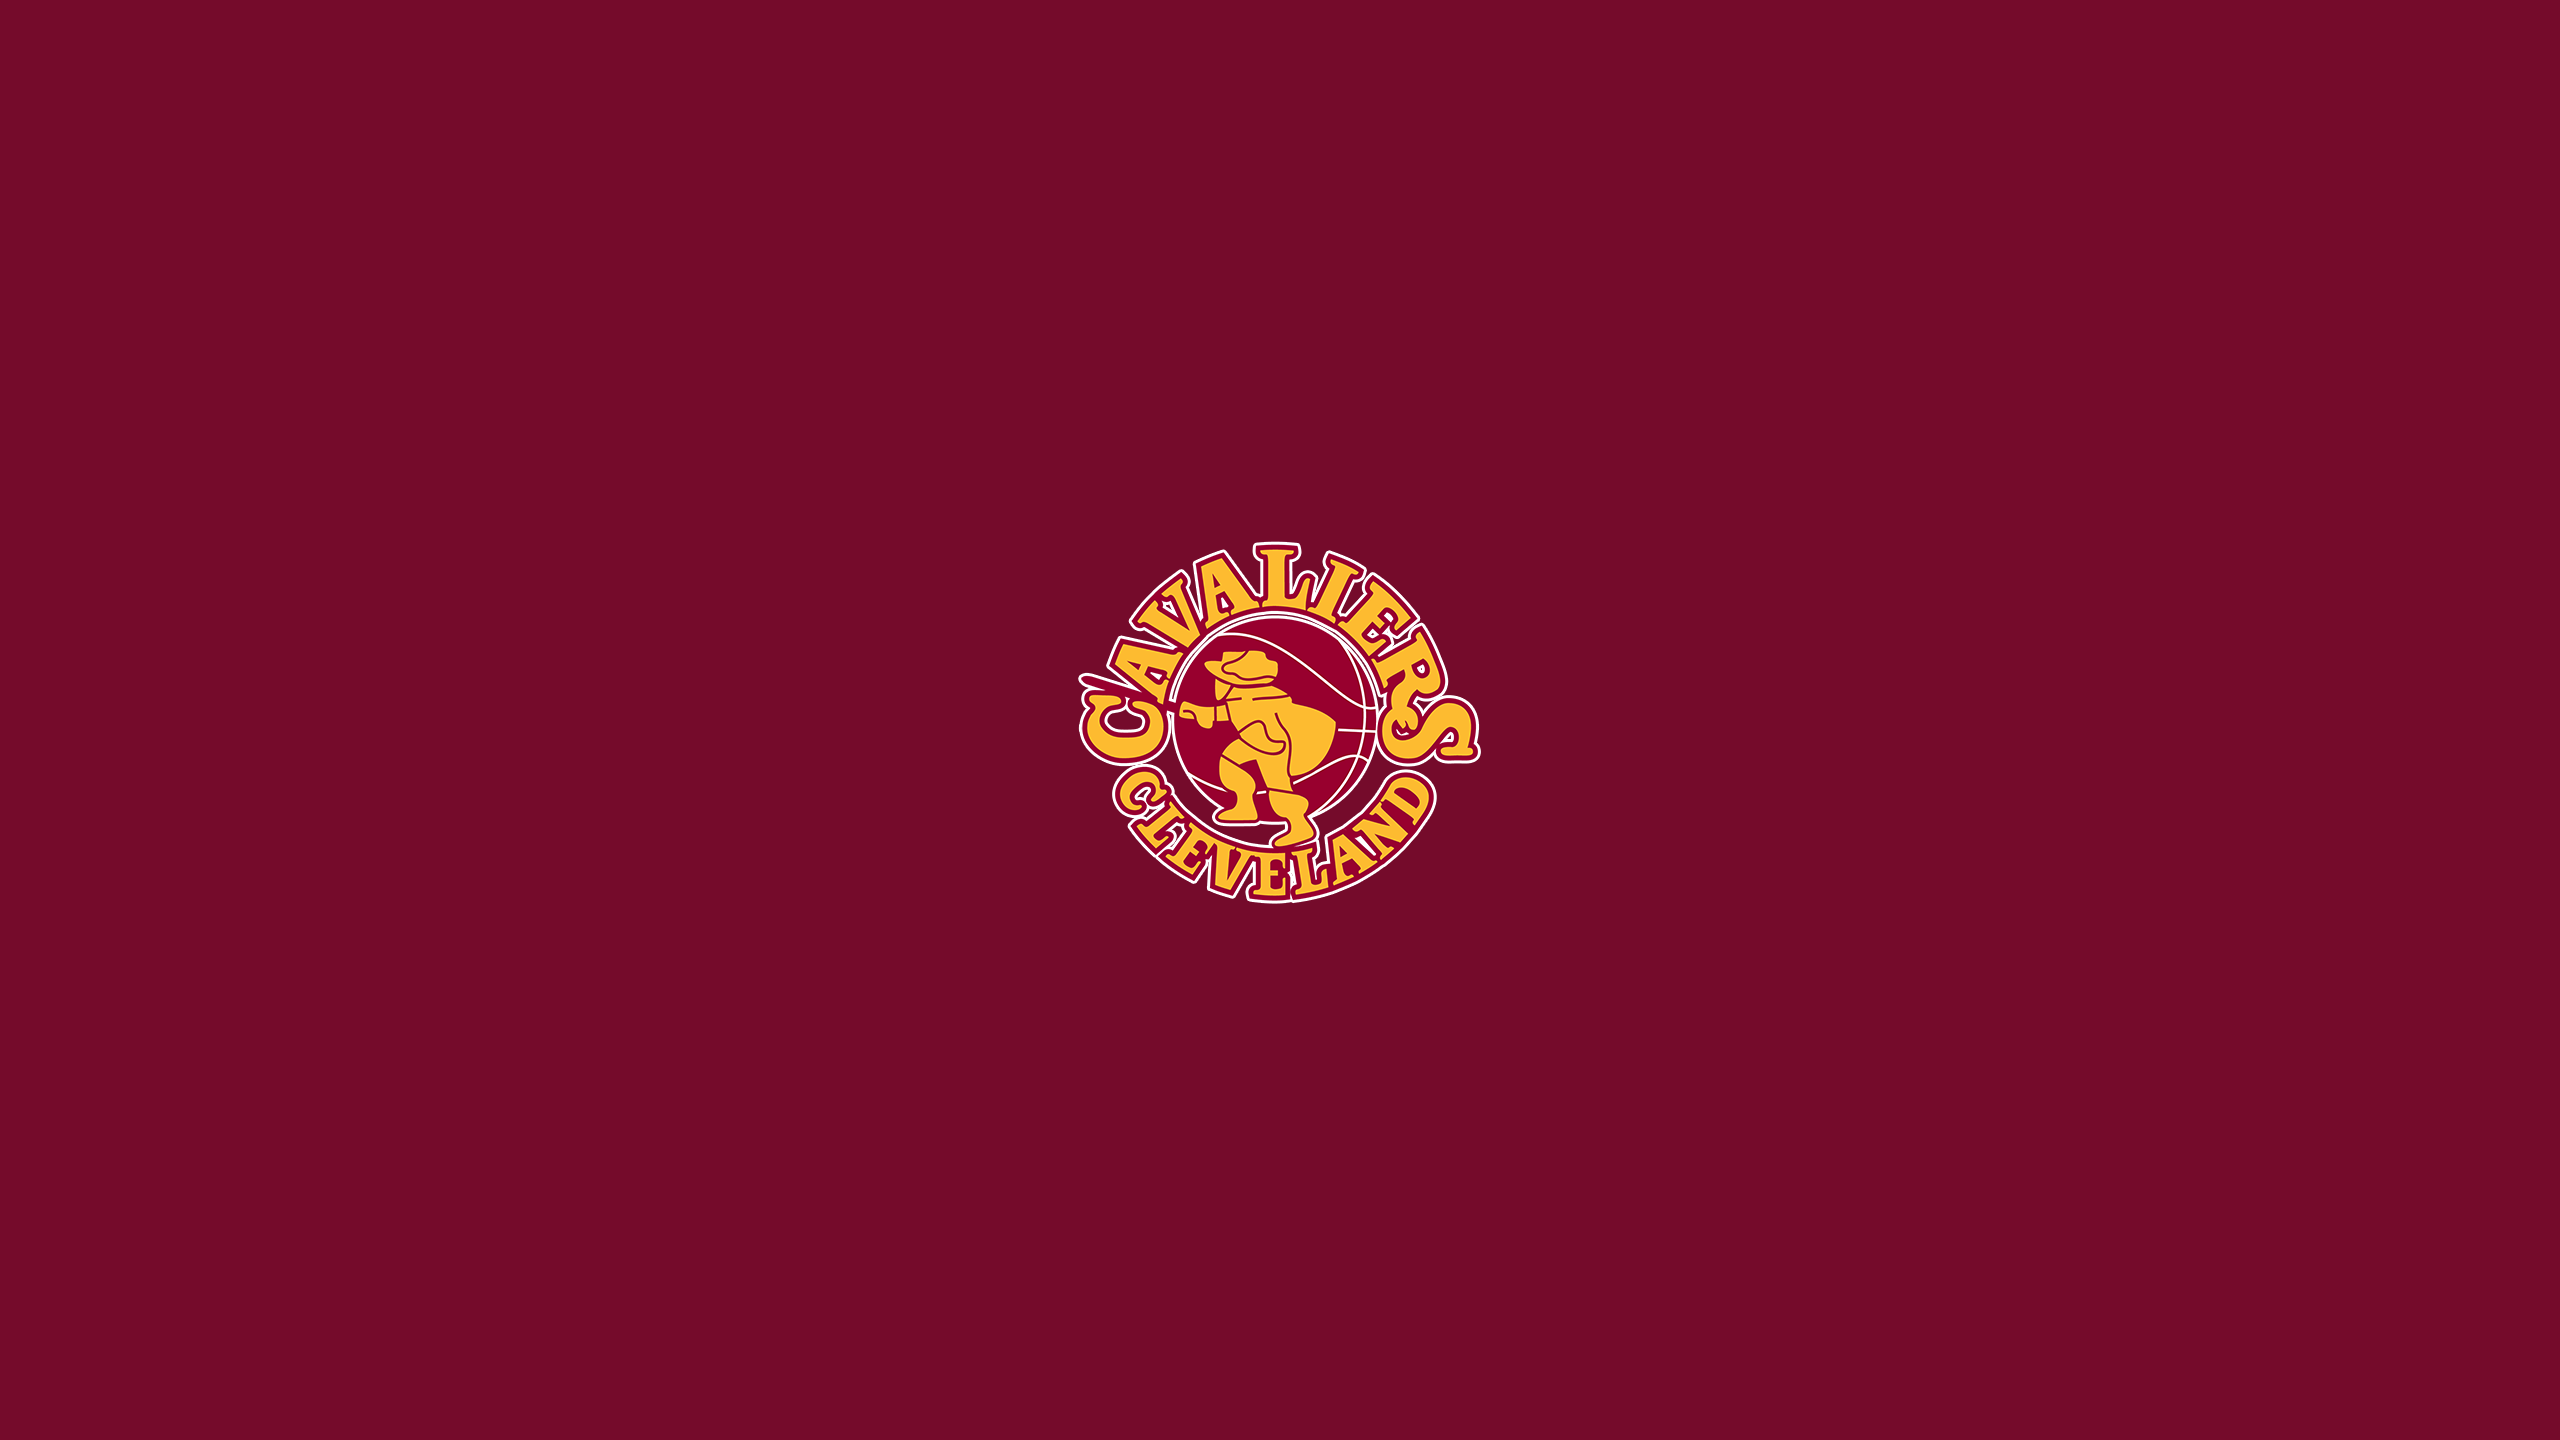 Nba Basketball Emblem Logo 2560x1440